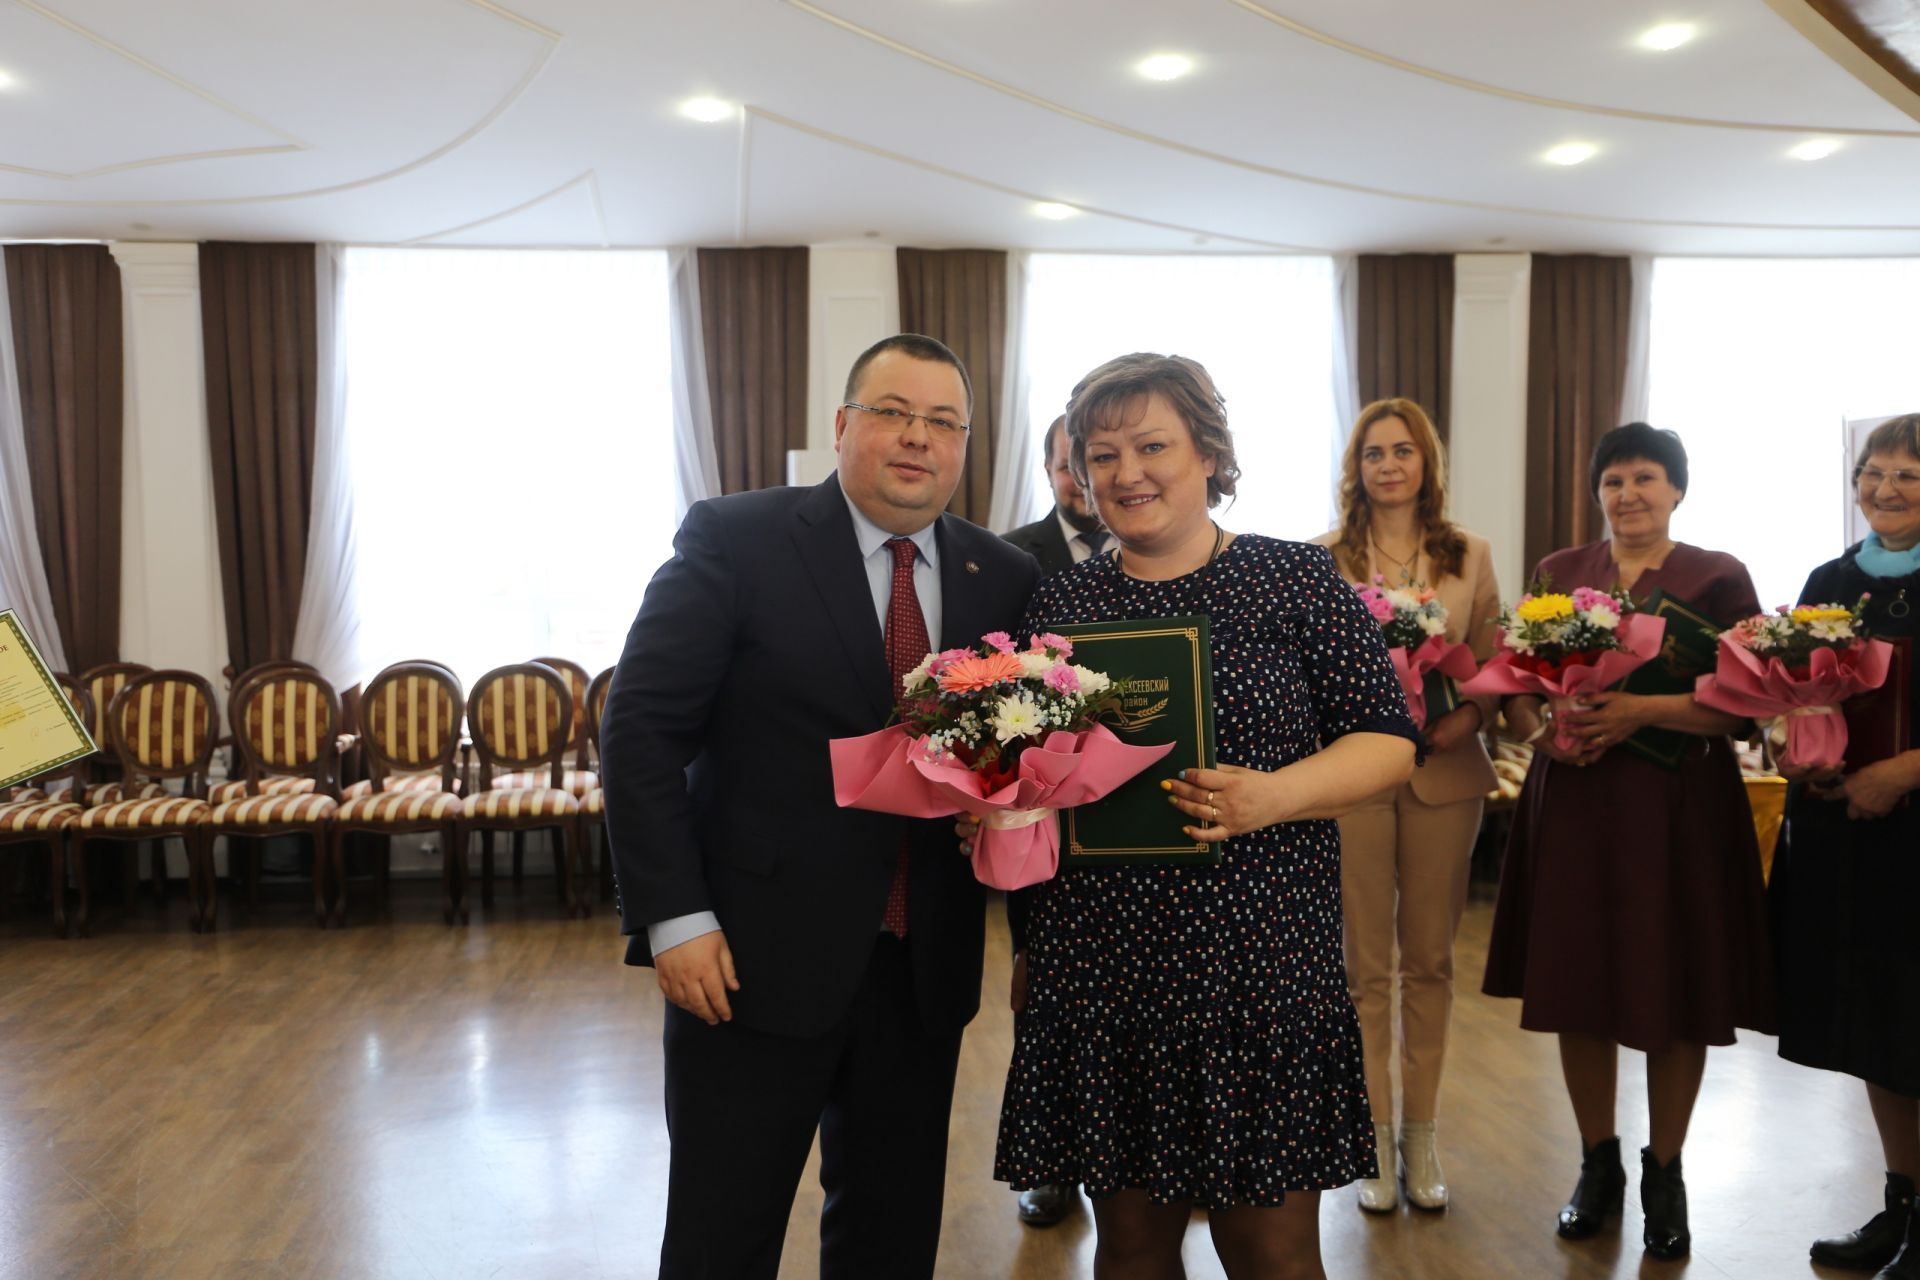 Алексеевцы награждены за многолетний плодотворный труд